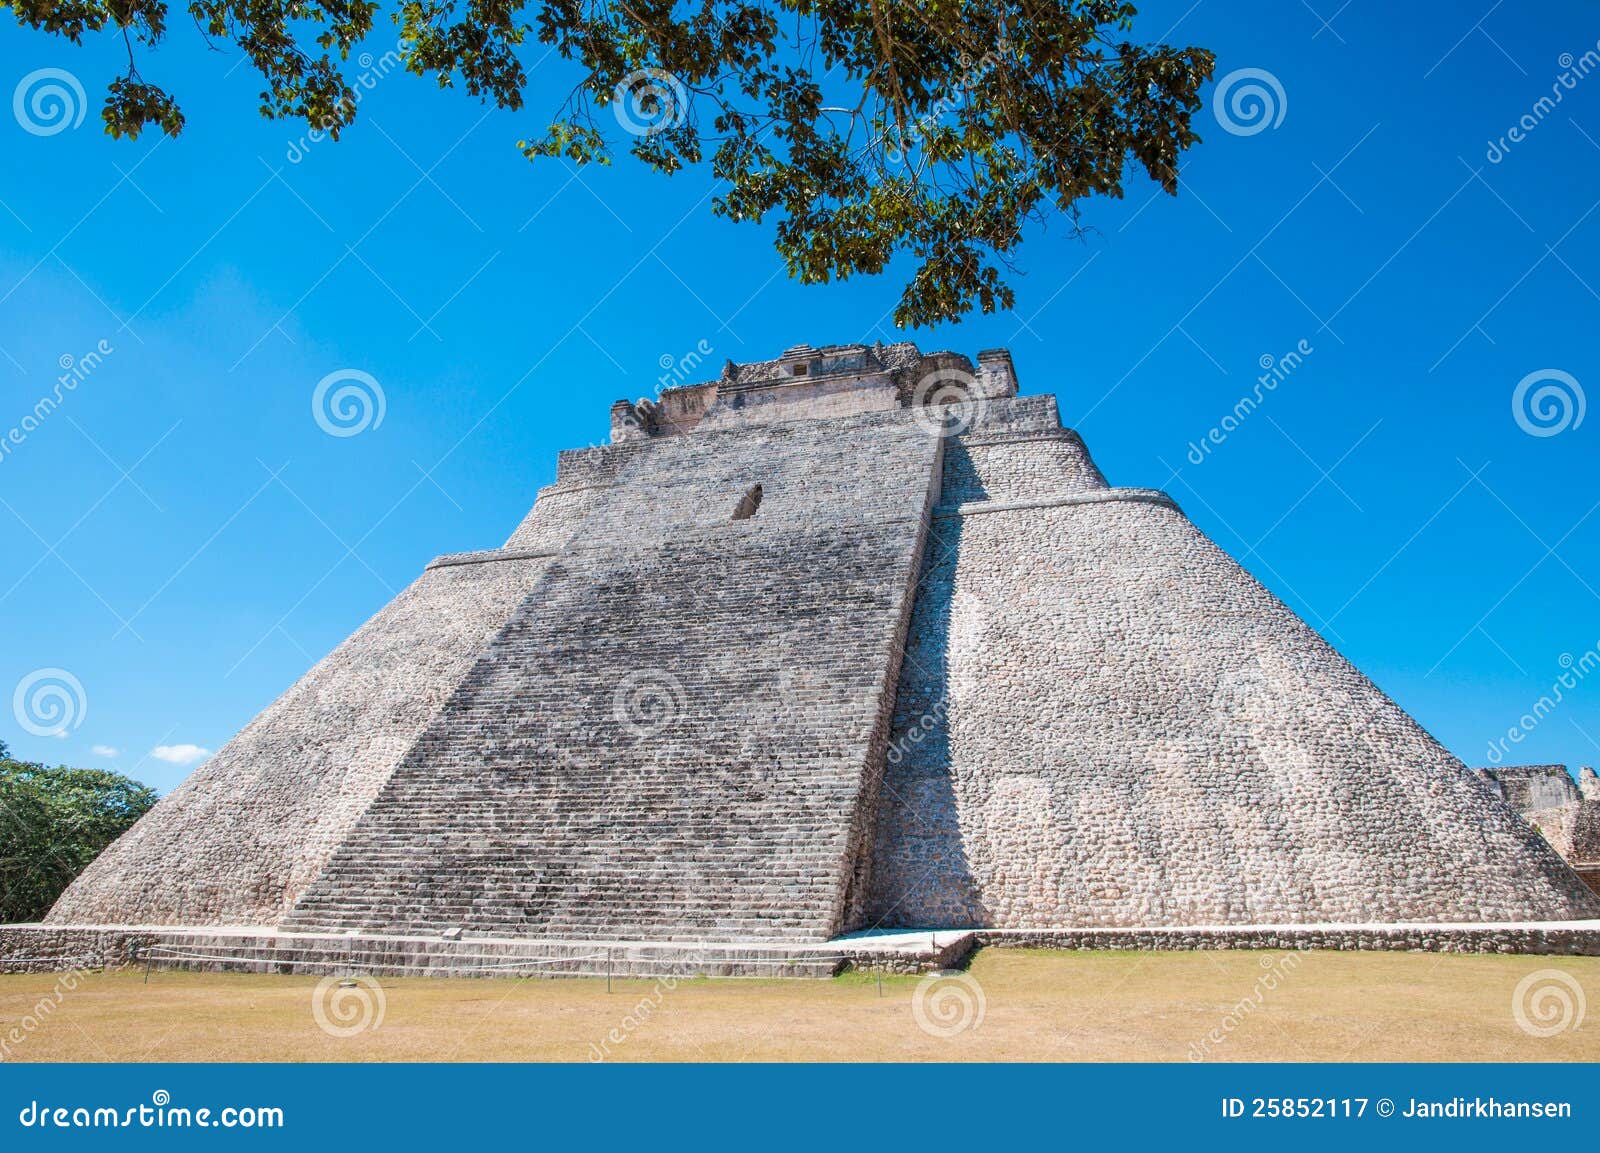 adivino-pyramid at uxmal on the yucatan peninsula